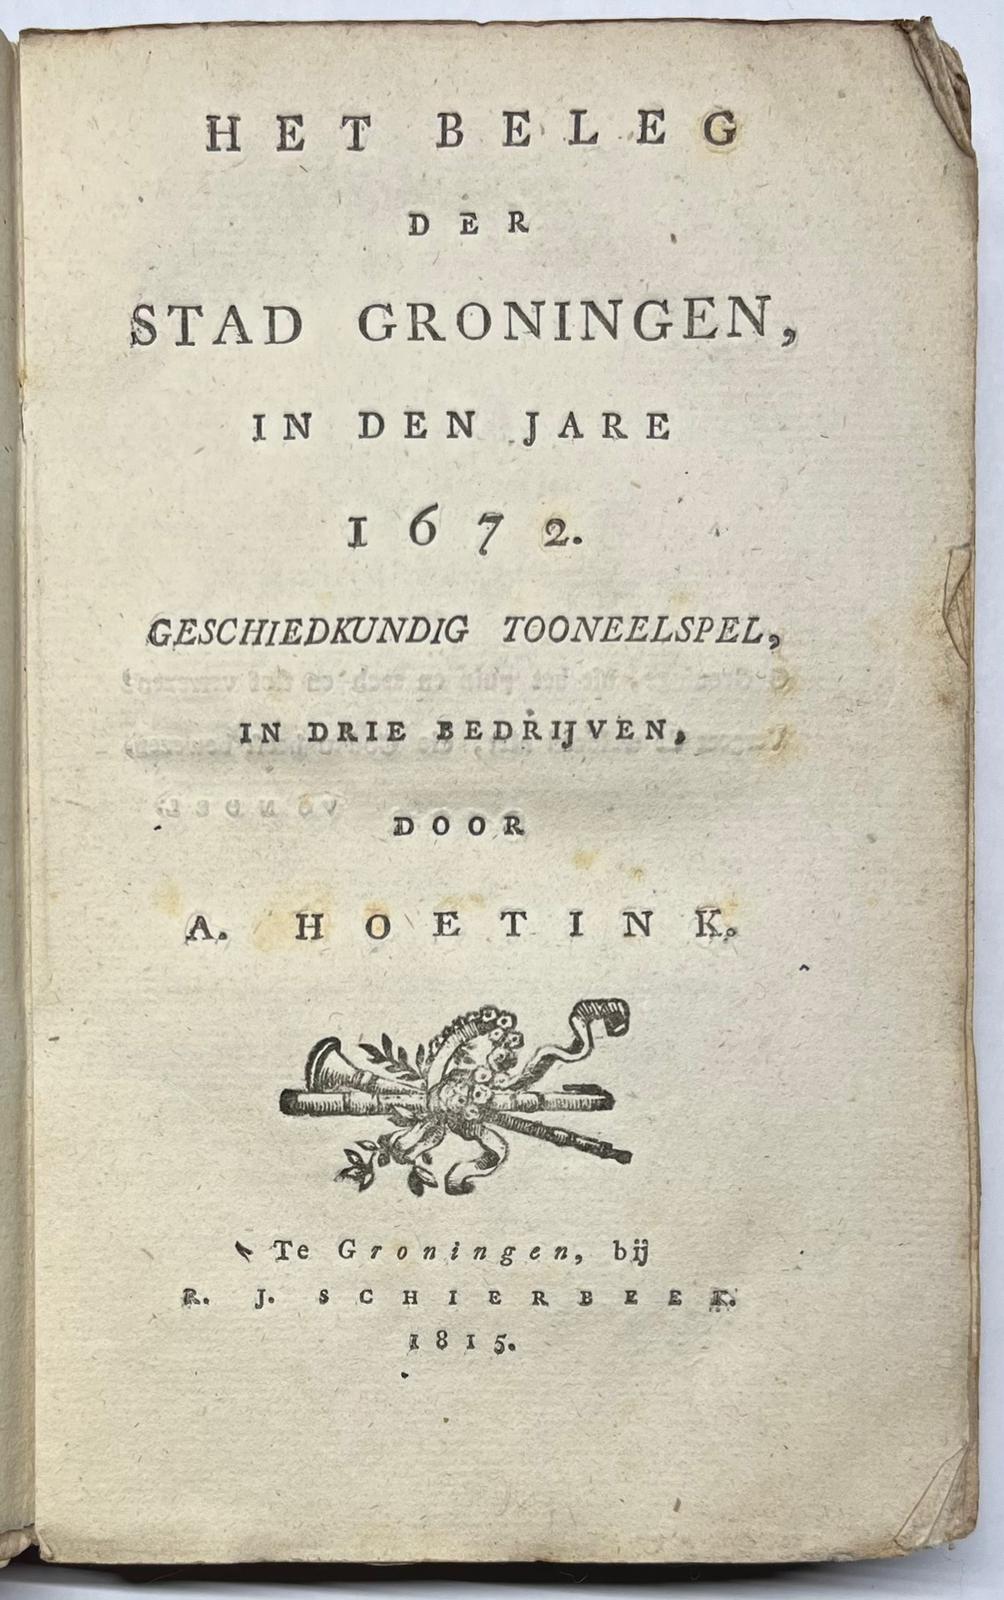 [Groningen, 1815, theatre] Het beleg der stad Groningen, in den jare 1672. Groningen: R.J. Schierbeek, 1815, [4], 126 pp.